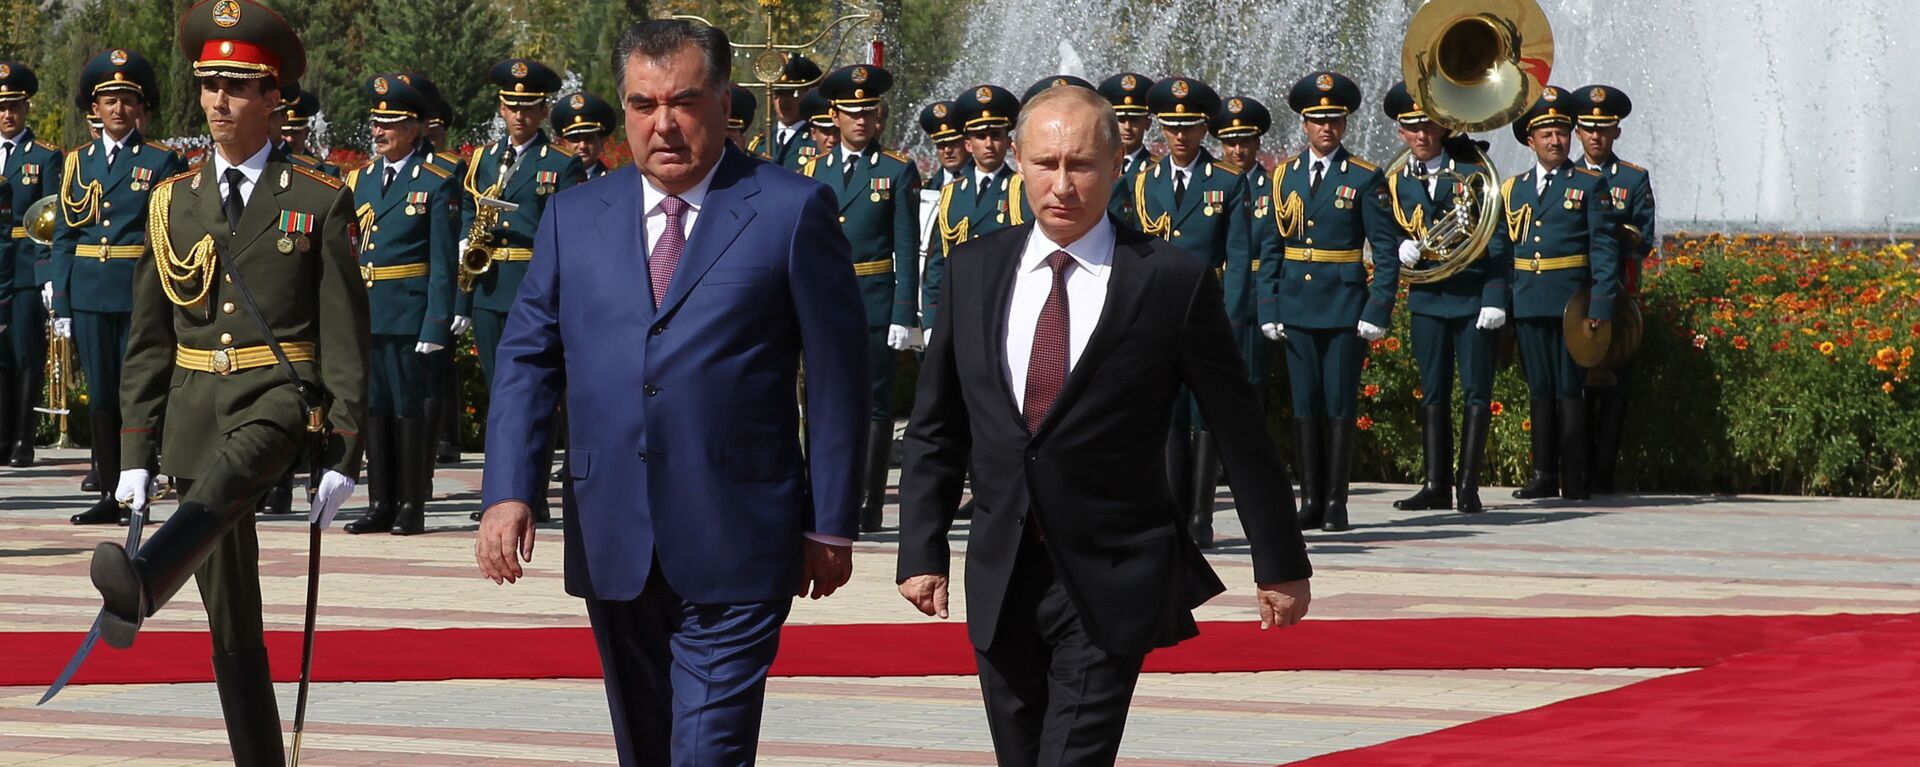 Официальный визит президента РФ В. Путина в Таджикистан, 2012 год, архивное фото - Sputnik Таджикистан, 1920, 20.09.2021